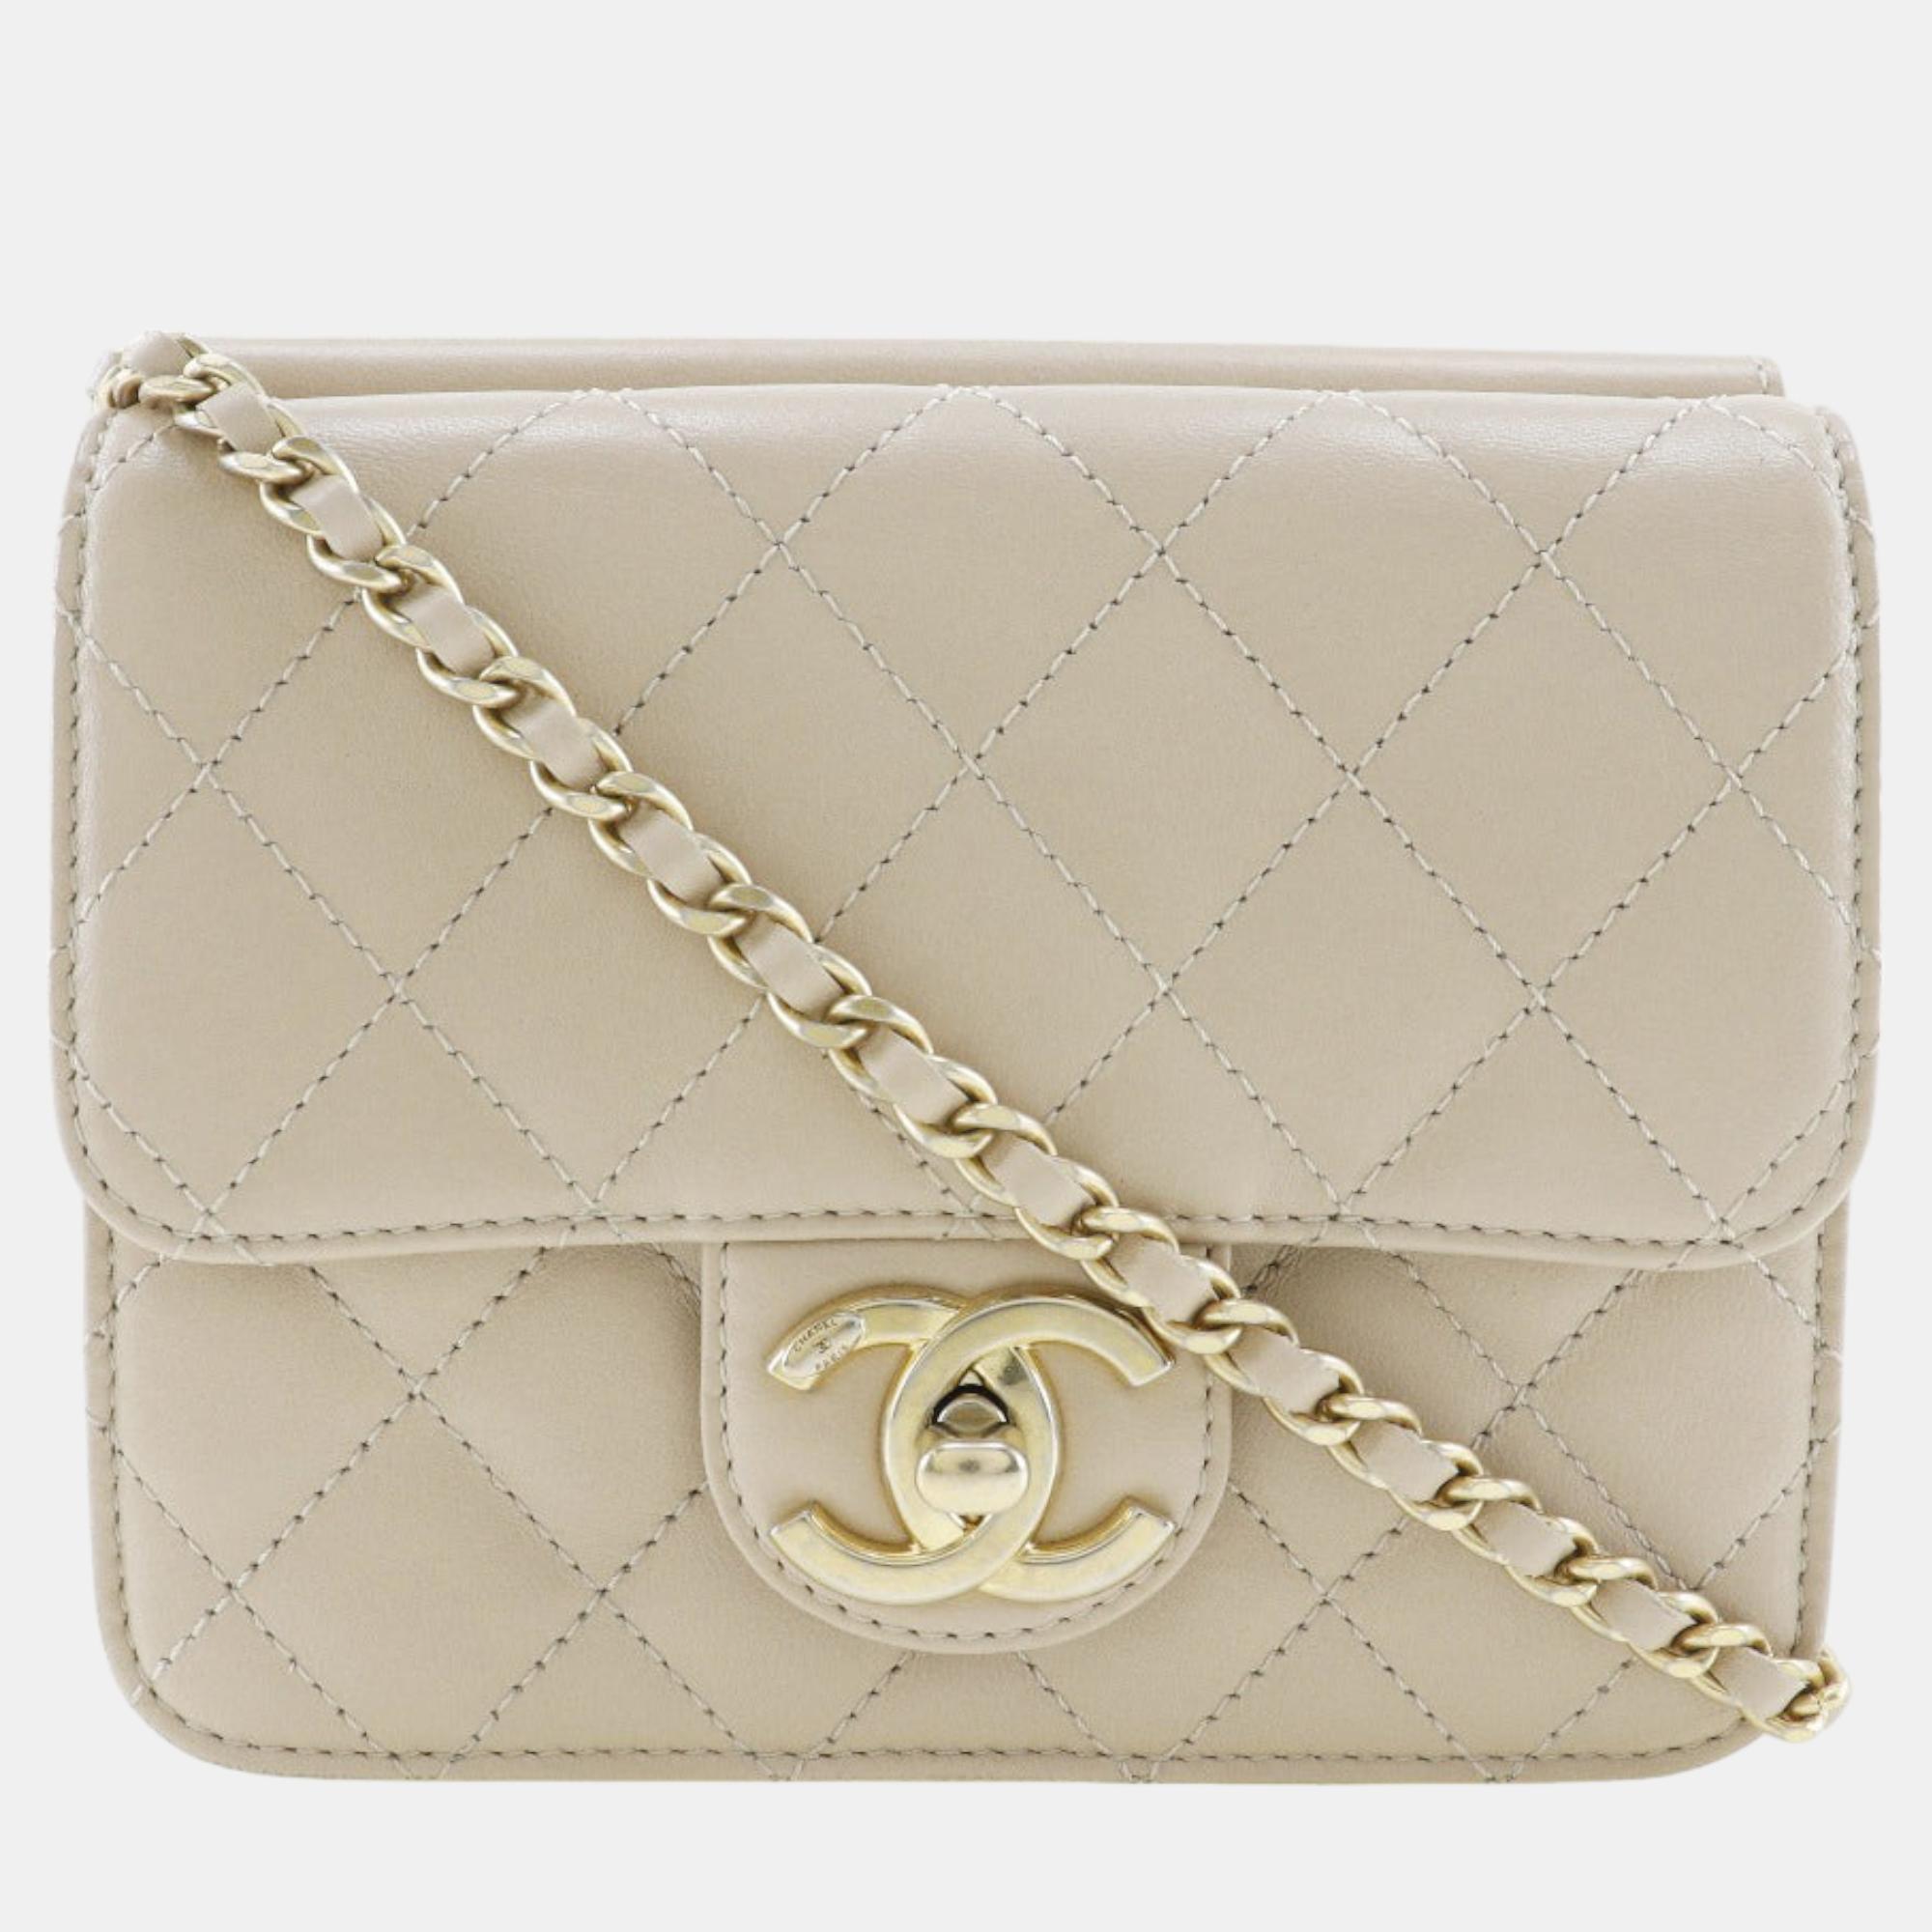 Chanel beige classic mini single flap bag